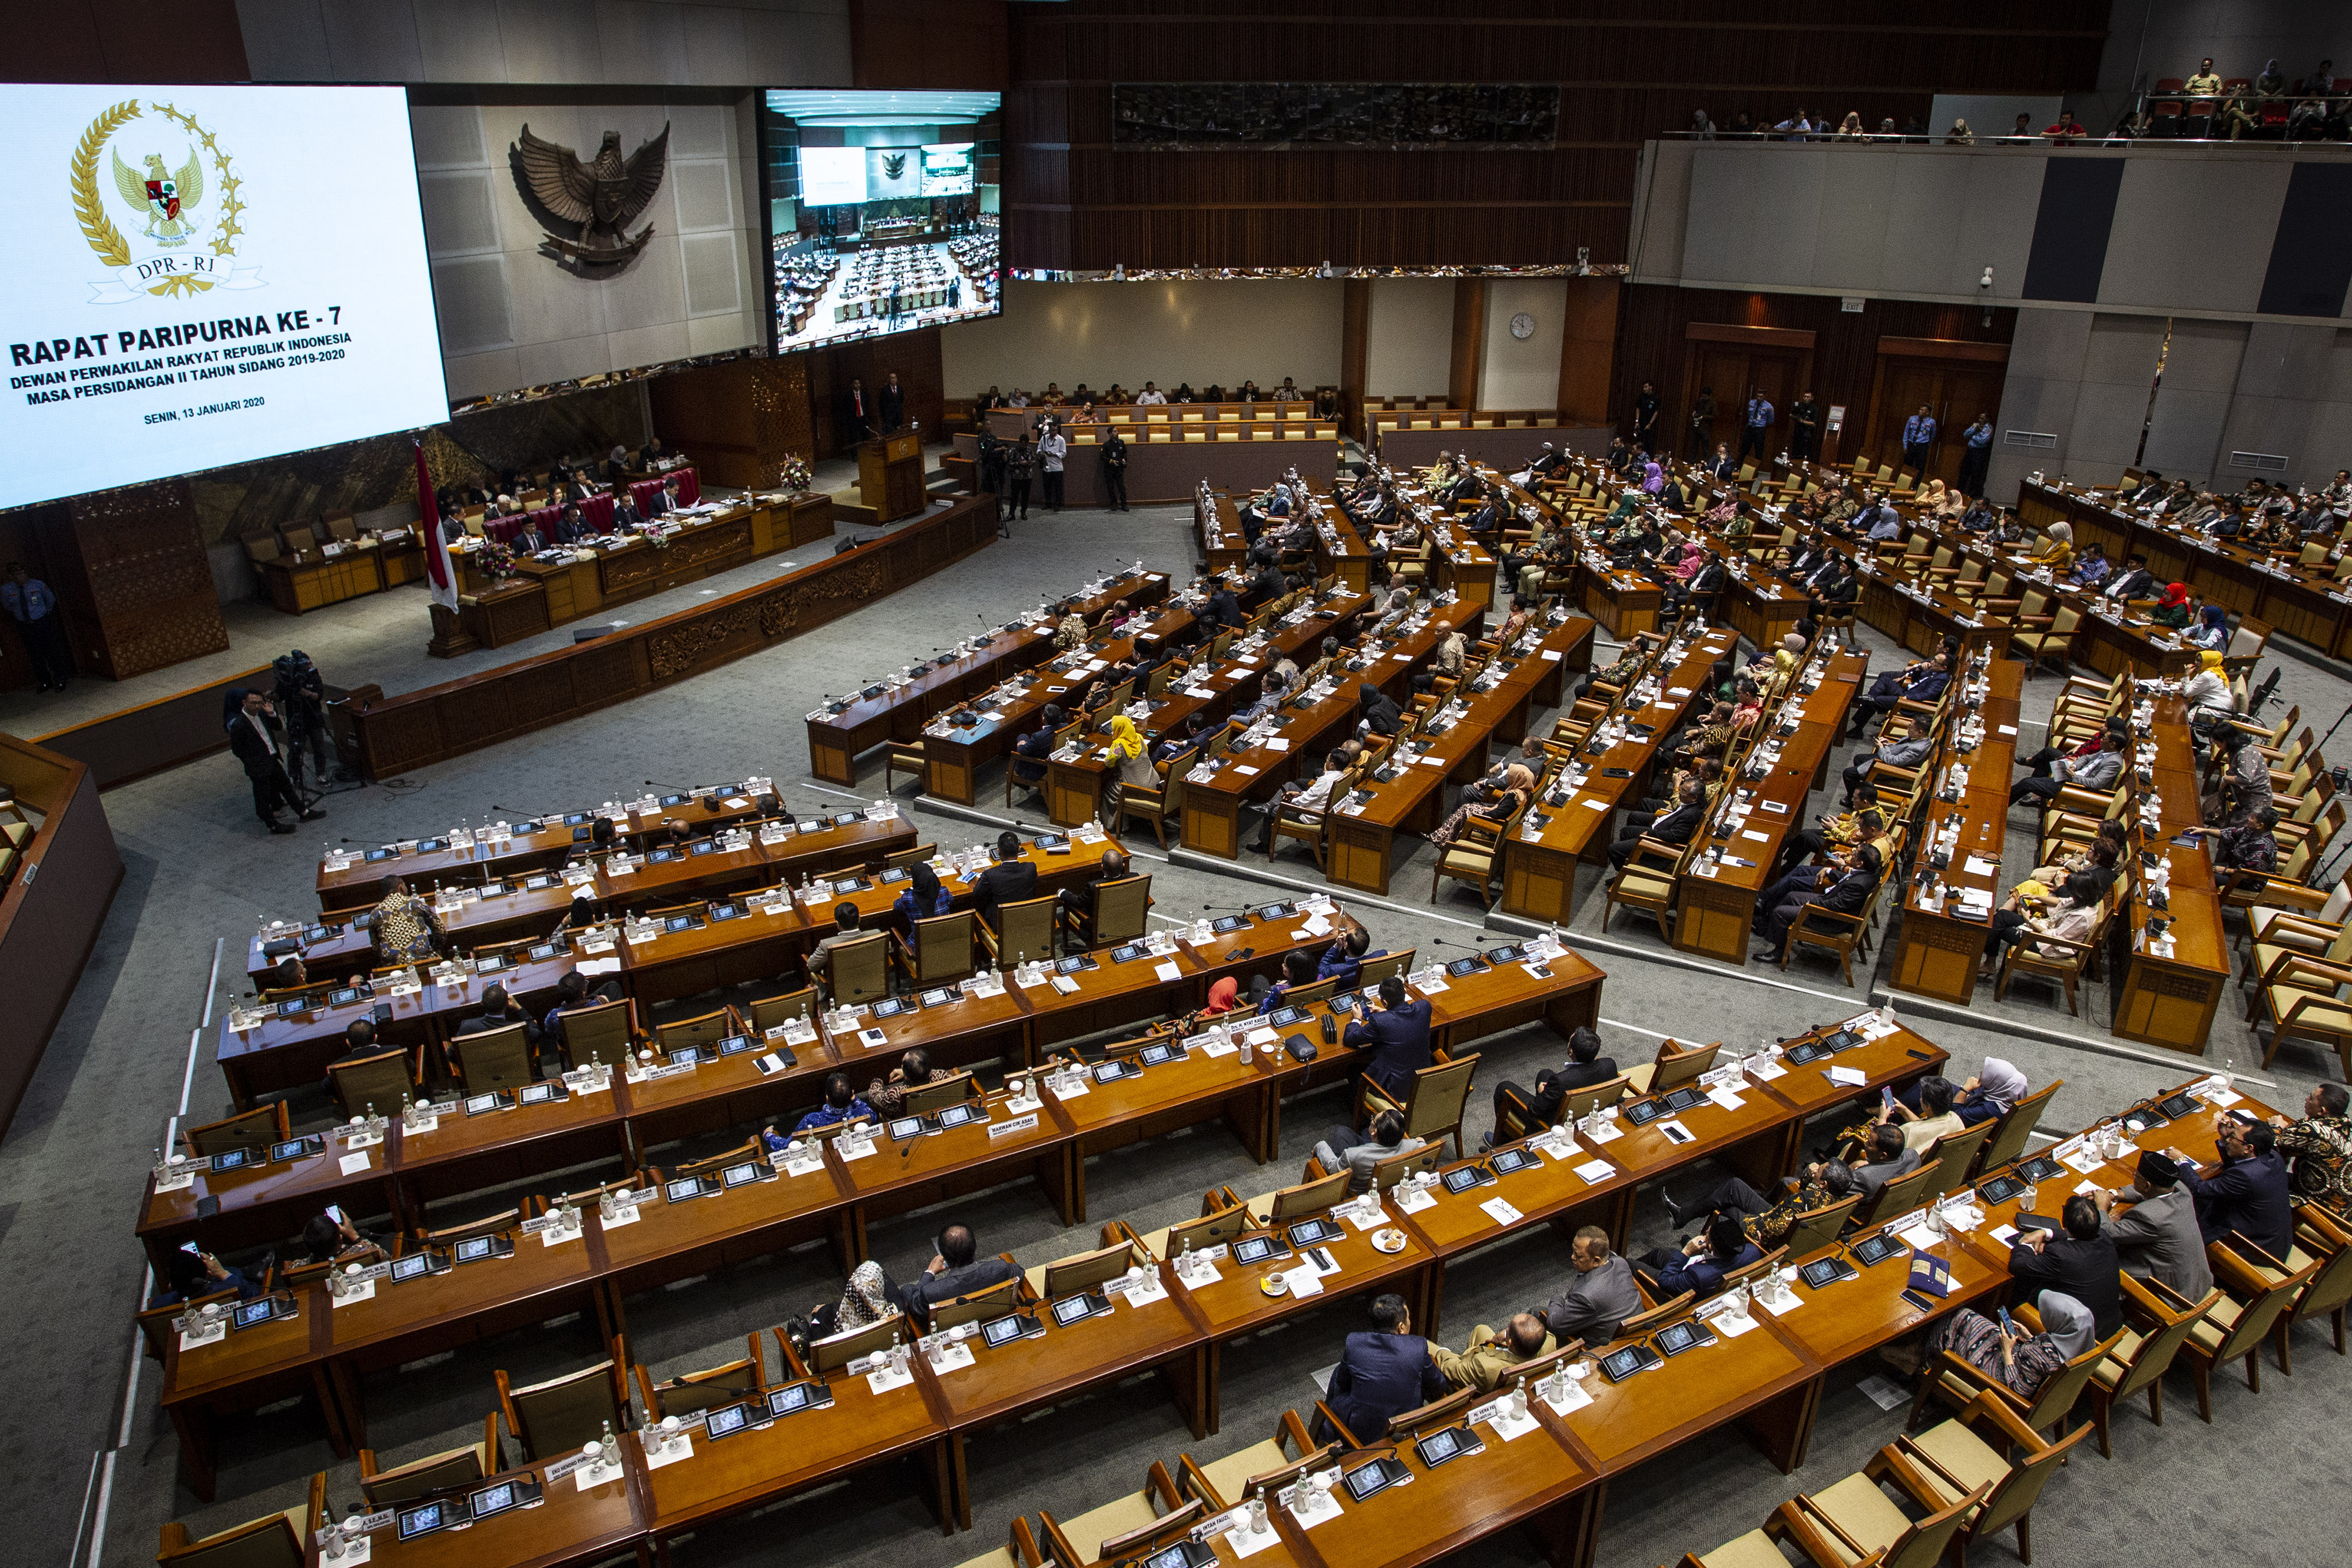 Suasana Rapat Paripurna Ke-7 Pembukaan Masa Persidangan II Tahun Sidang 2019-2020 di Kompleks Parlemen, Senayan, Jakarta, Senin (13/1). /Antara Foto